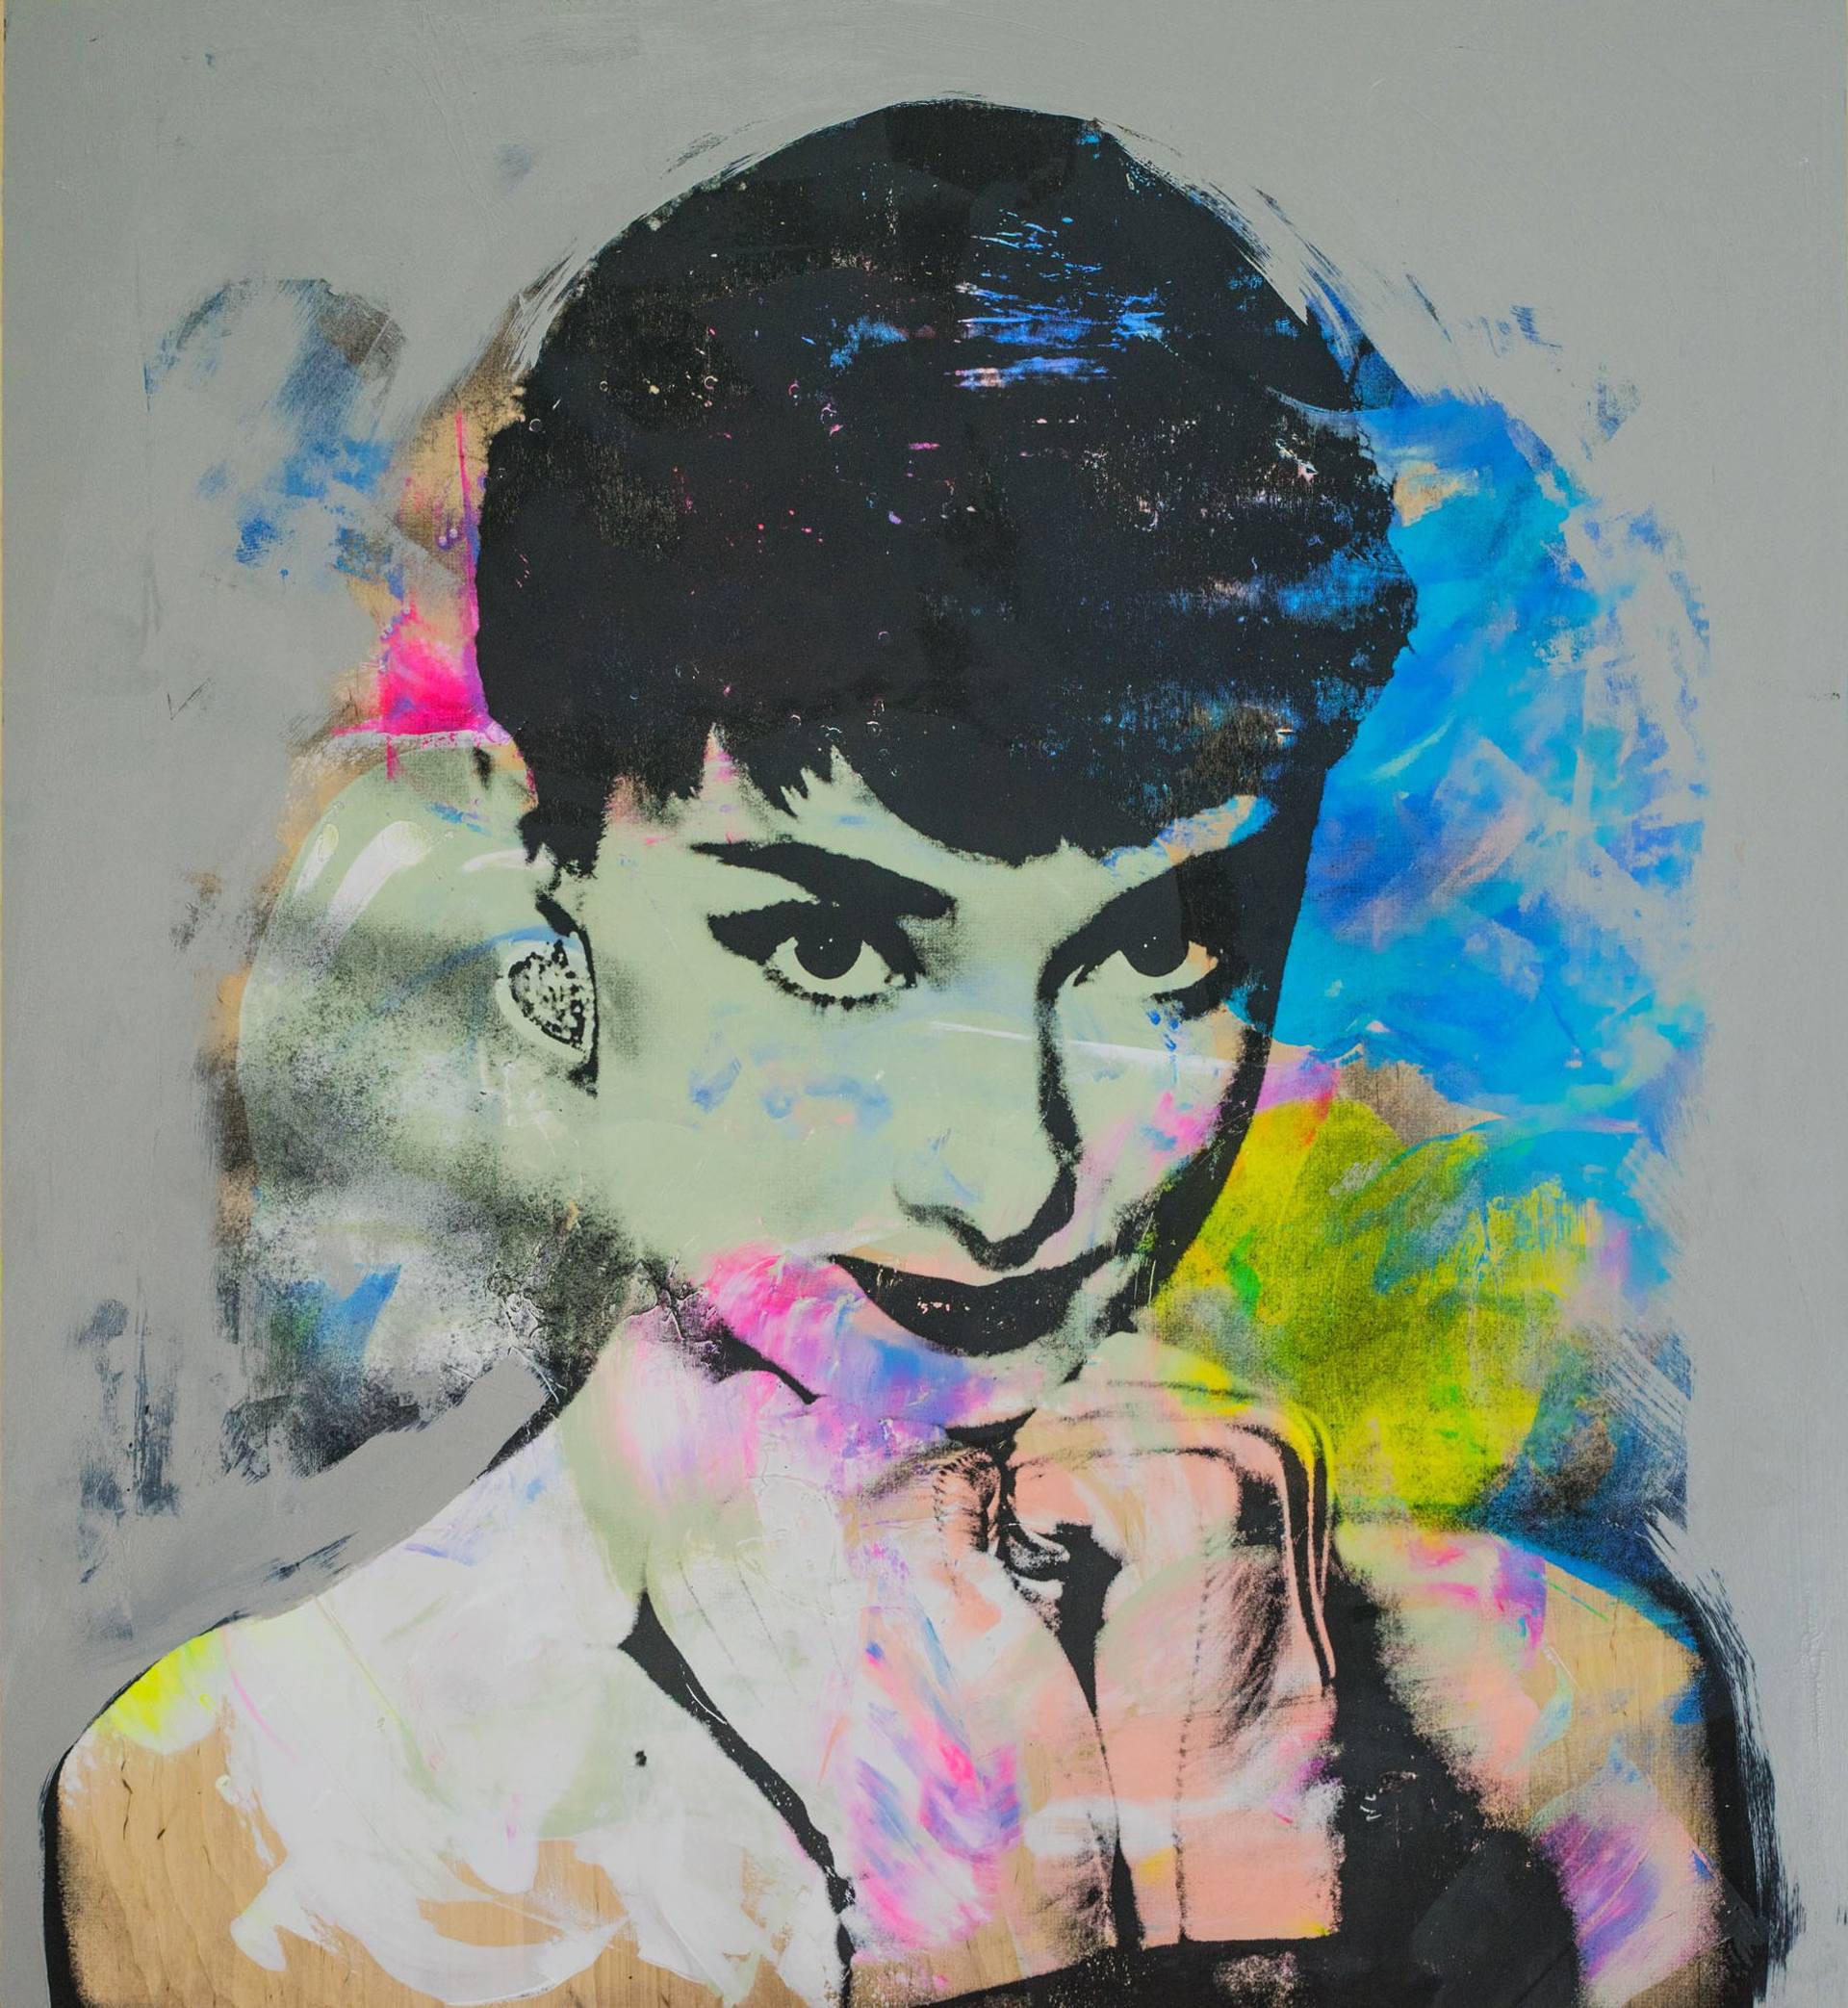 Audrey Hepburn pop art portrait painting, popular culture